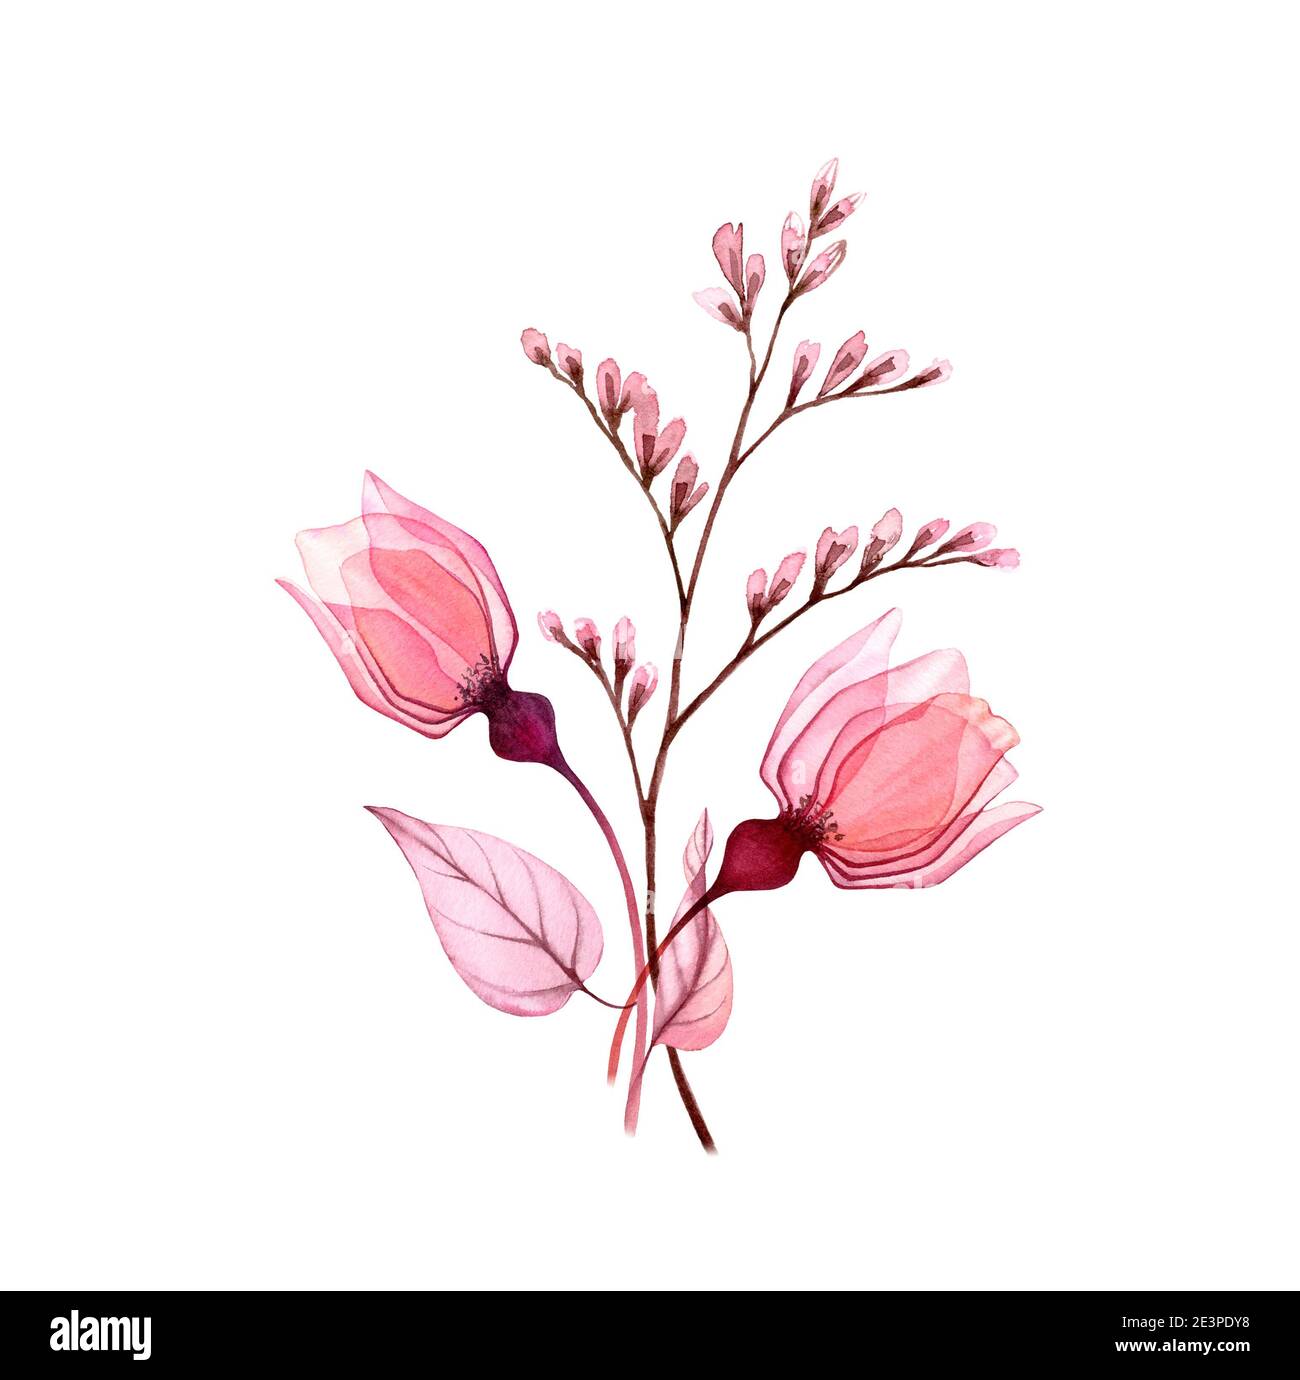 Wasserfarbener Herbststrauß. Transparente rosa Rosenknospen mit Zweig isoliert auf weiß. Handbemalte Vintage-Kunstwerke. Botanische Illustration für Karten Stockfoto